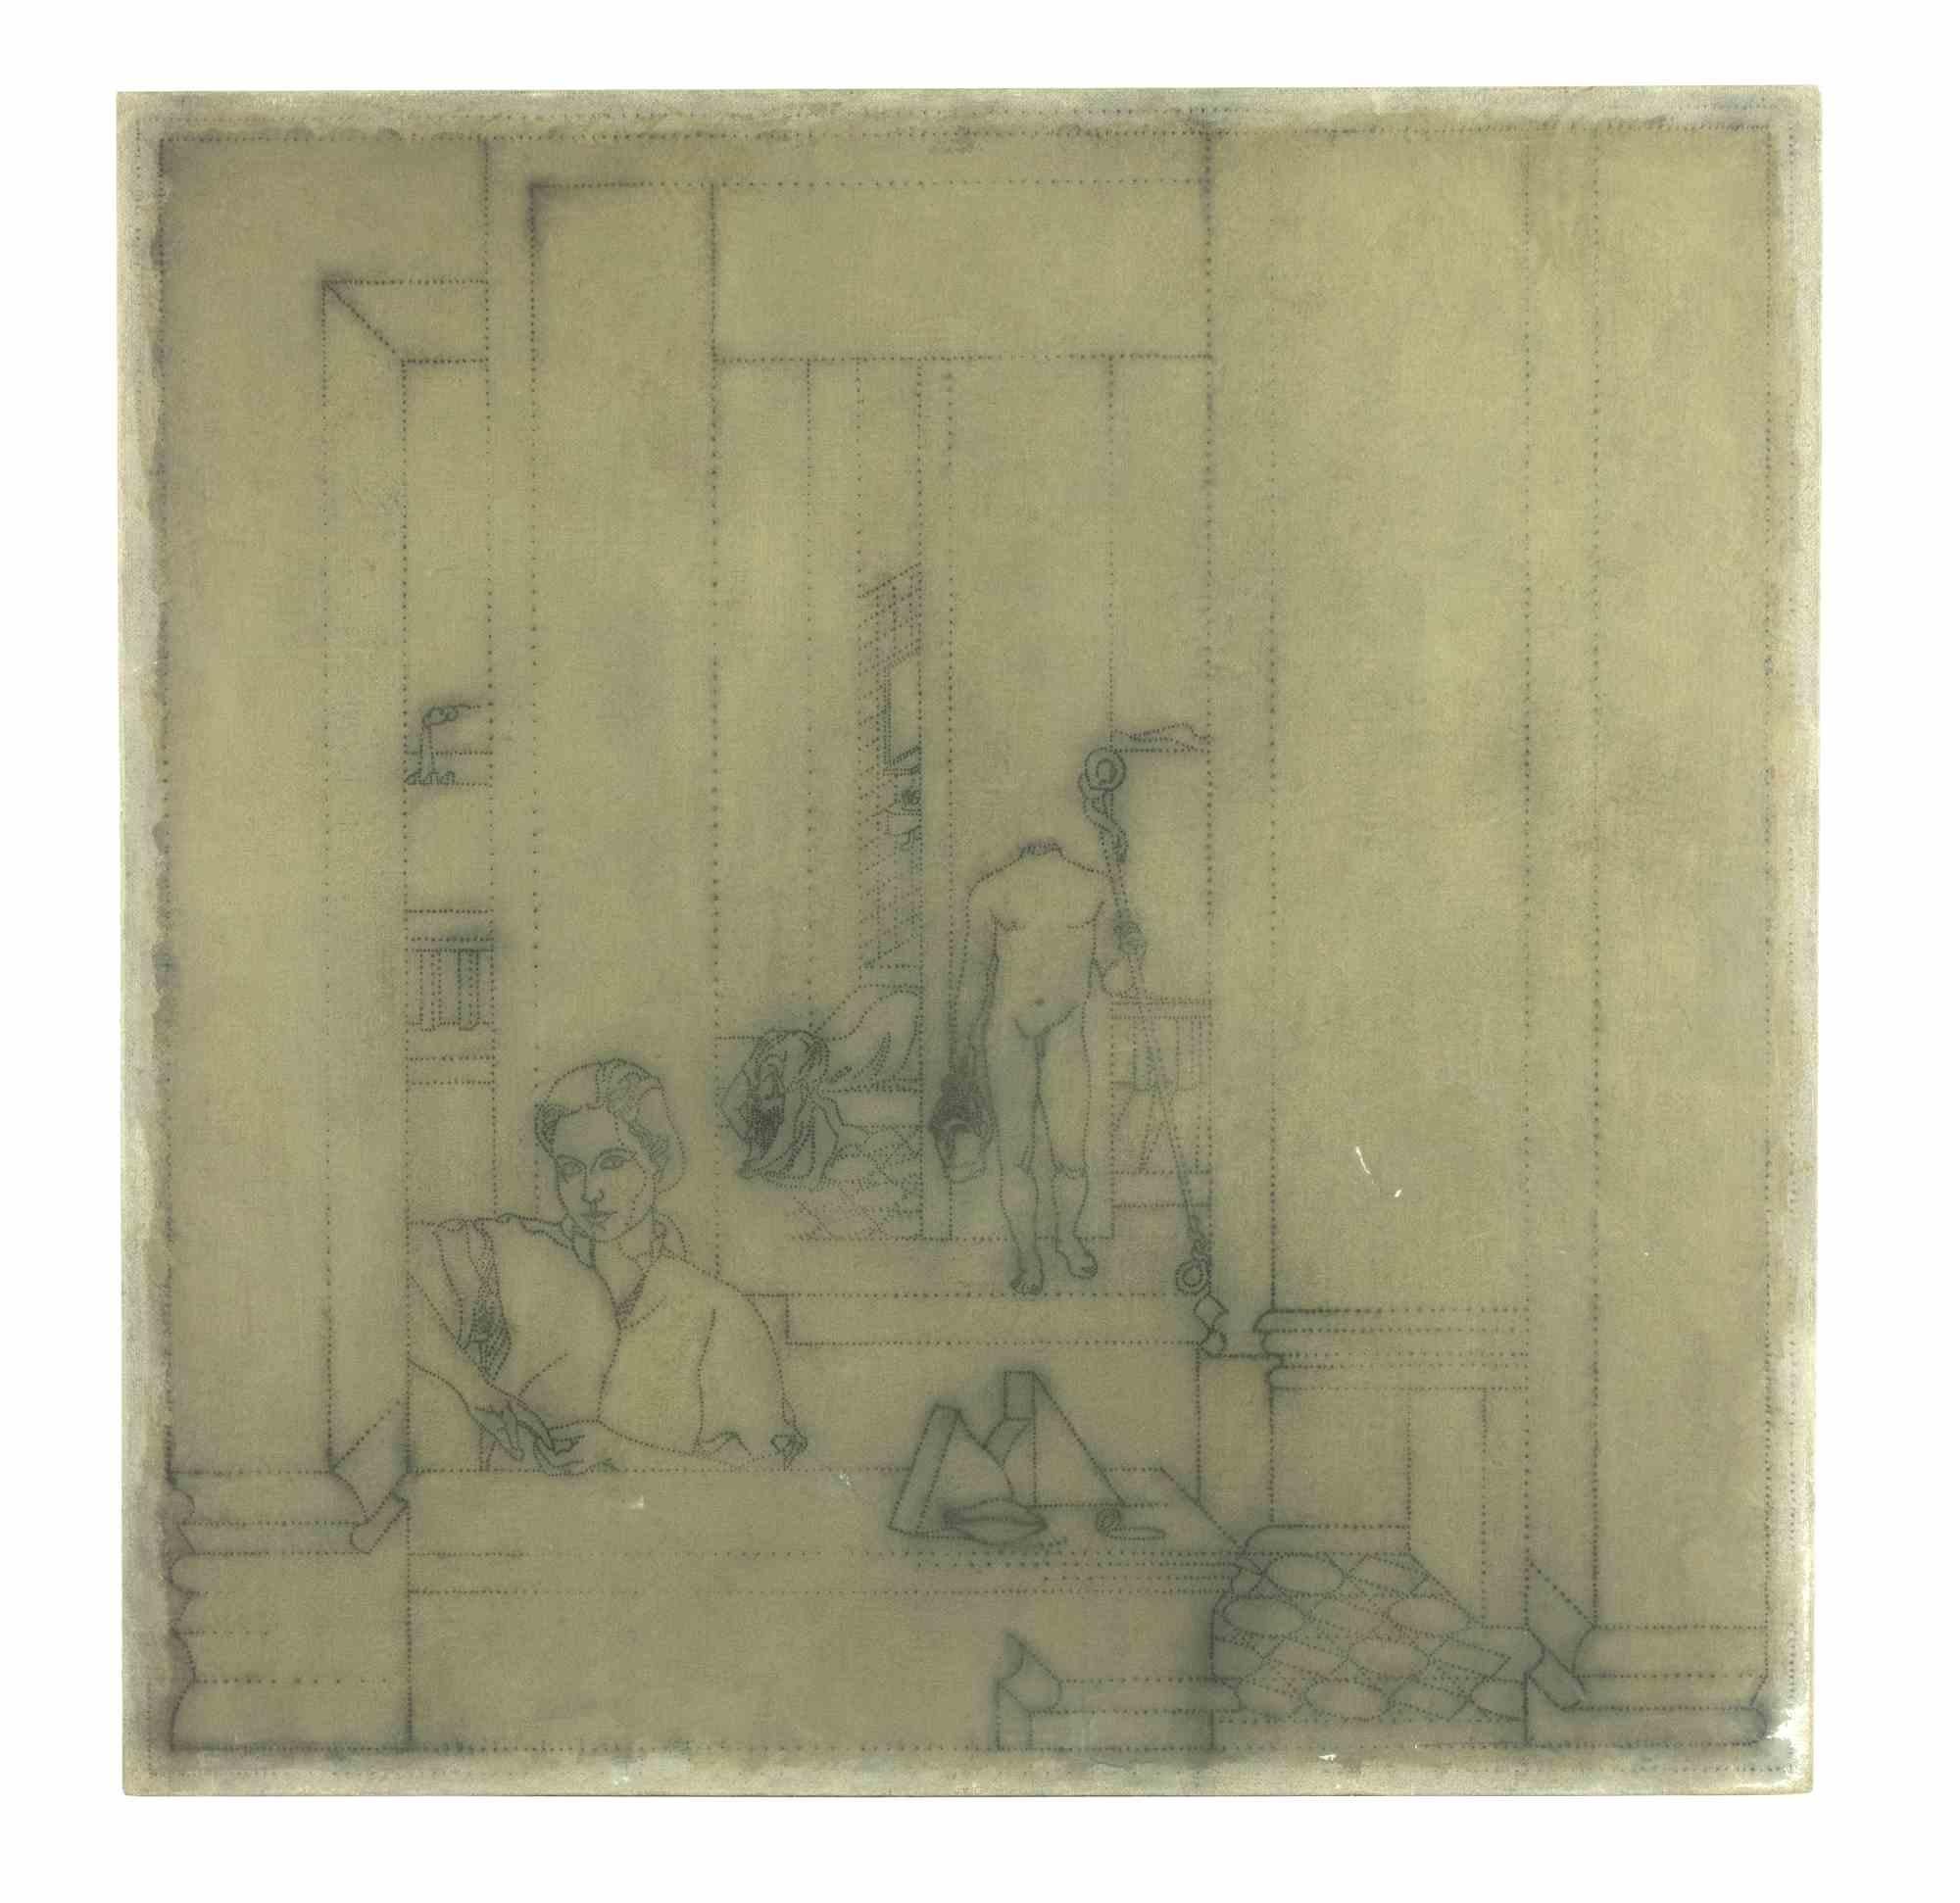 Composition géométrique de l'homme est une œuvre d'art contemporain réalisée par Luigi Campanelli (1943) dans les années 1980.

Technique mixte sur toile.

L'artwrok représente des personnages à l'intérieur d'une architecture.